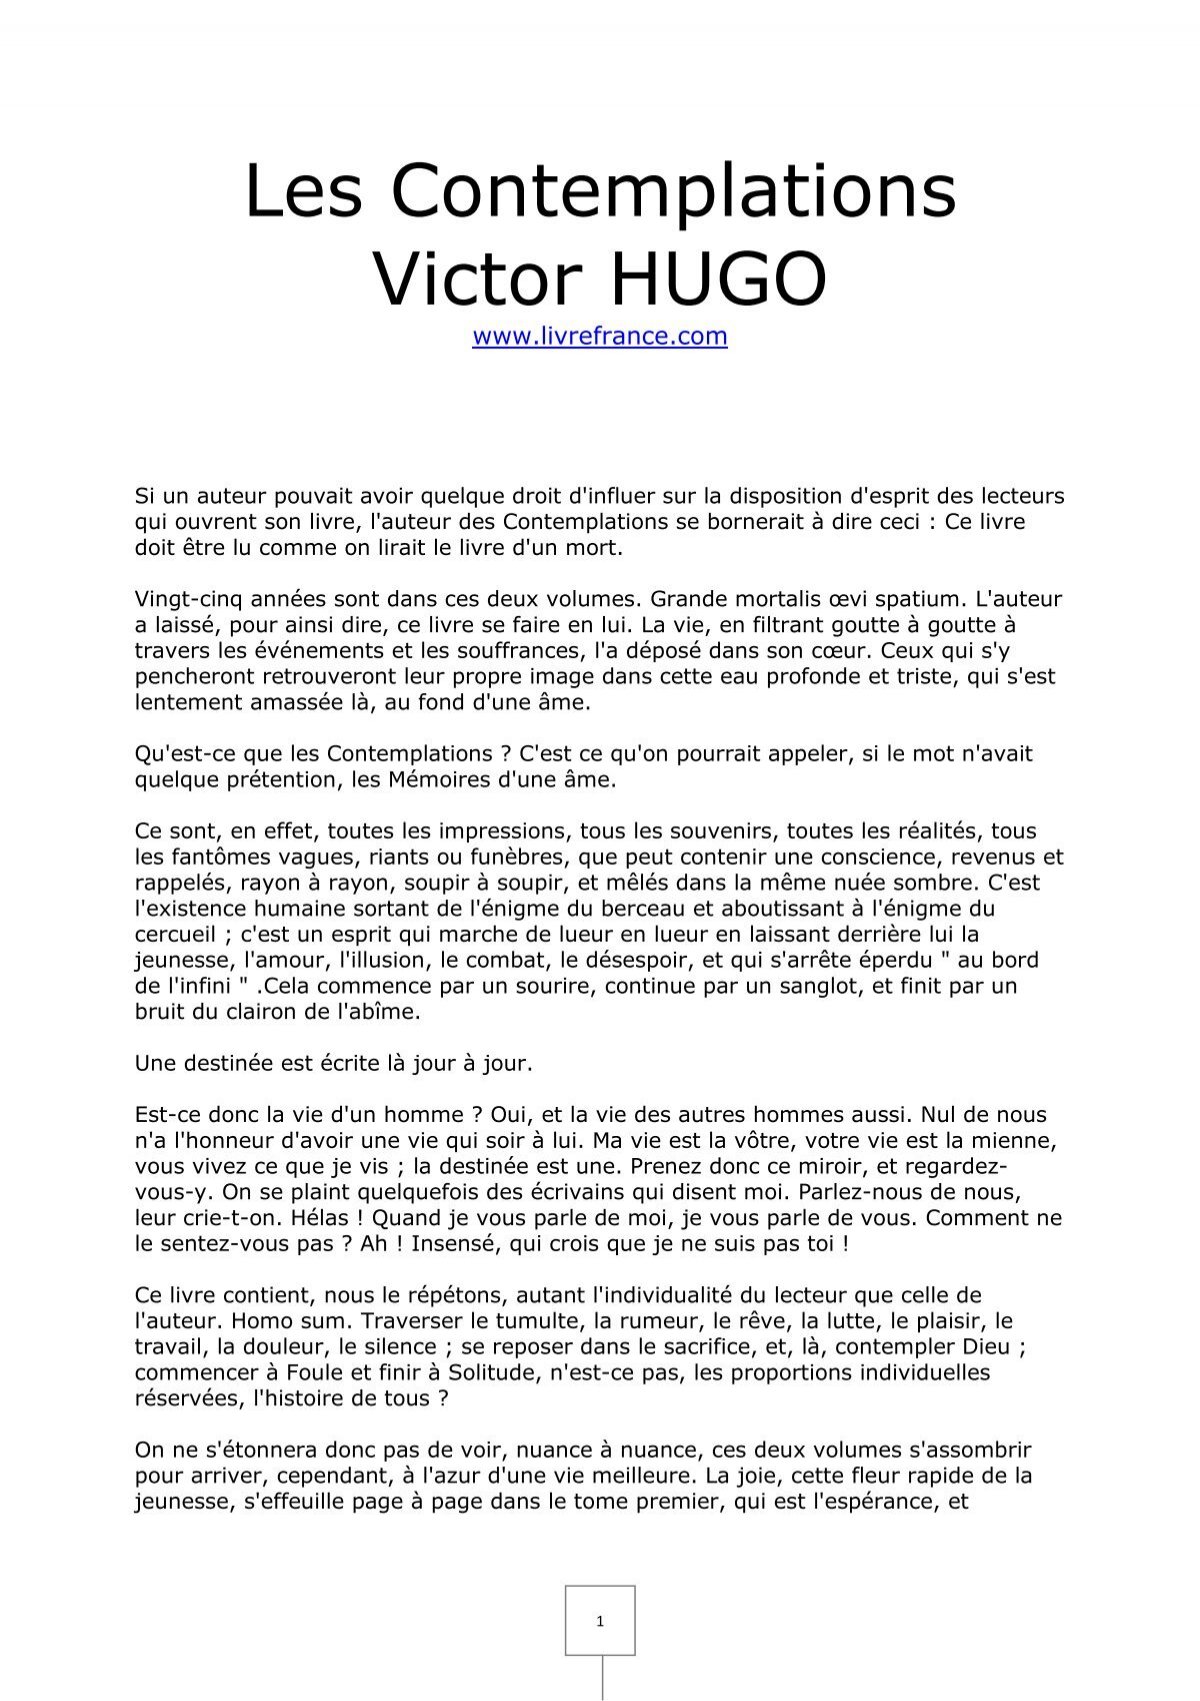 Les Contemplations Victor Hugo